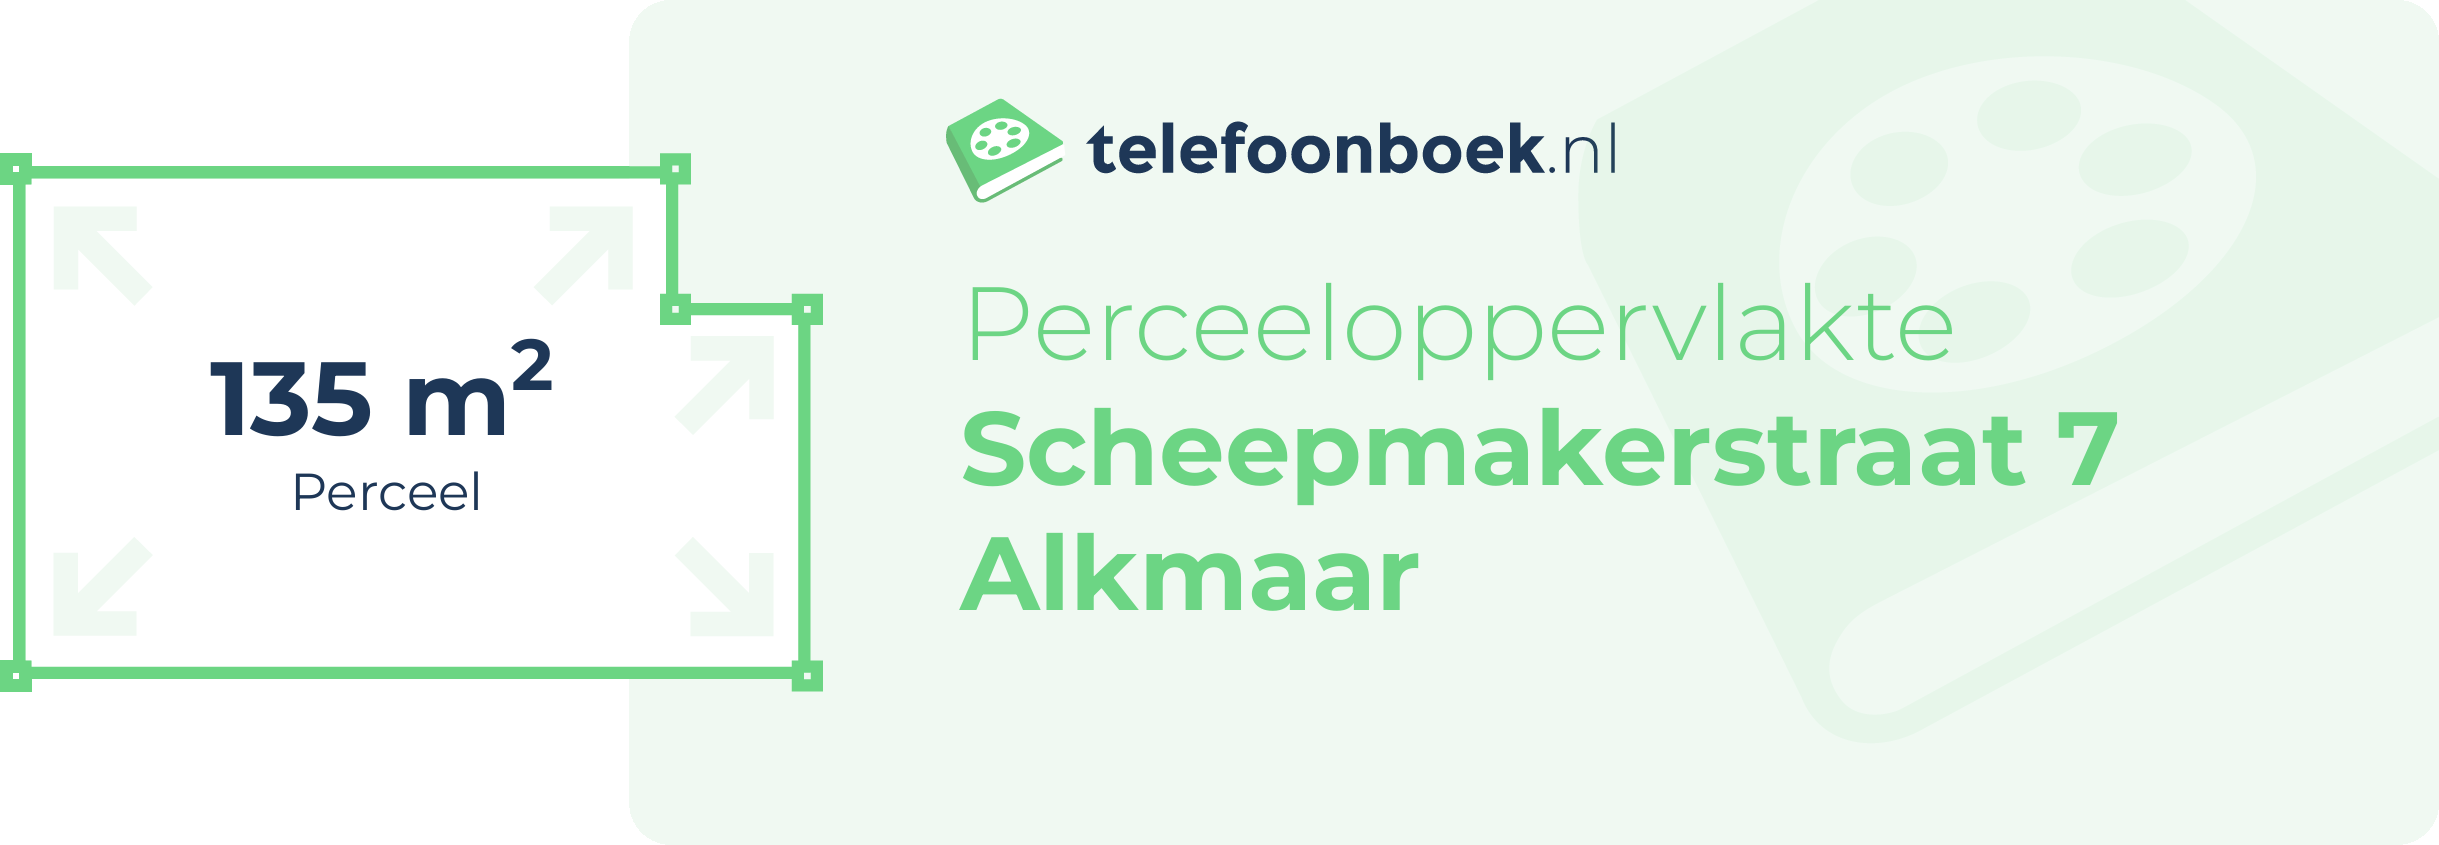 Perceeloppervlakte Scheepmakerstraat 7 Alkmaar